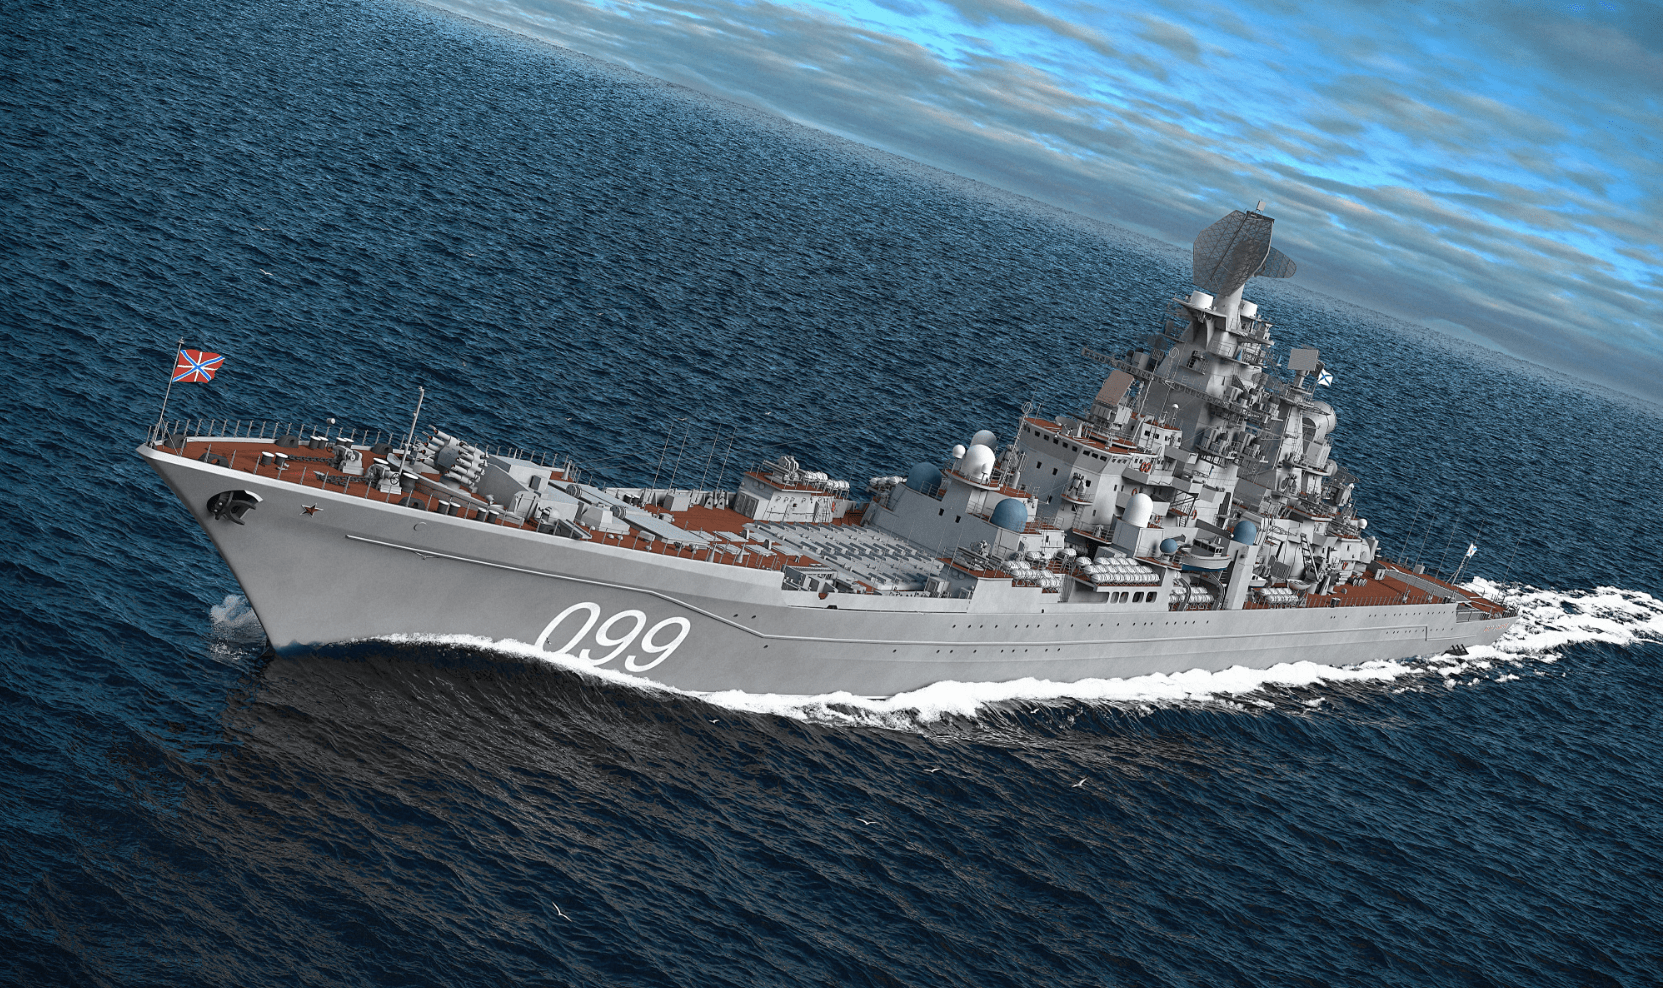 基洛夫级巡洋舰建造完成的有4艘,前3艘在苏联时期建成服役,分别是